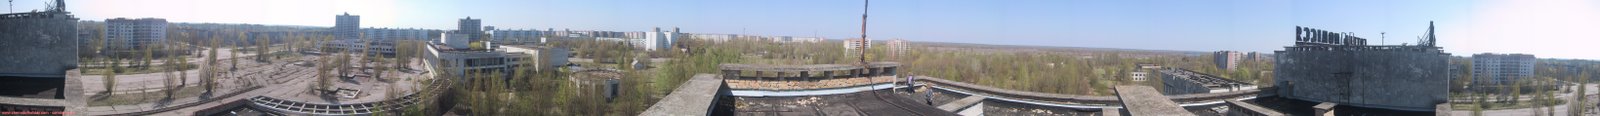 [CHERNOBIL+prypyat-panoramic.jpg]